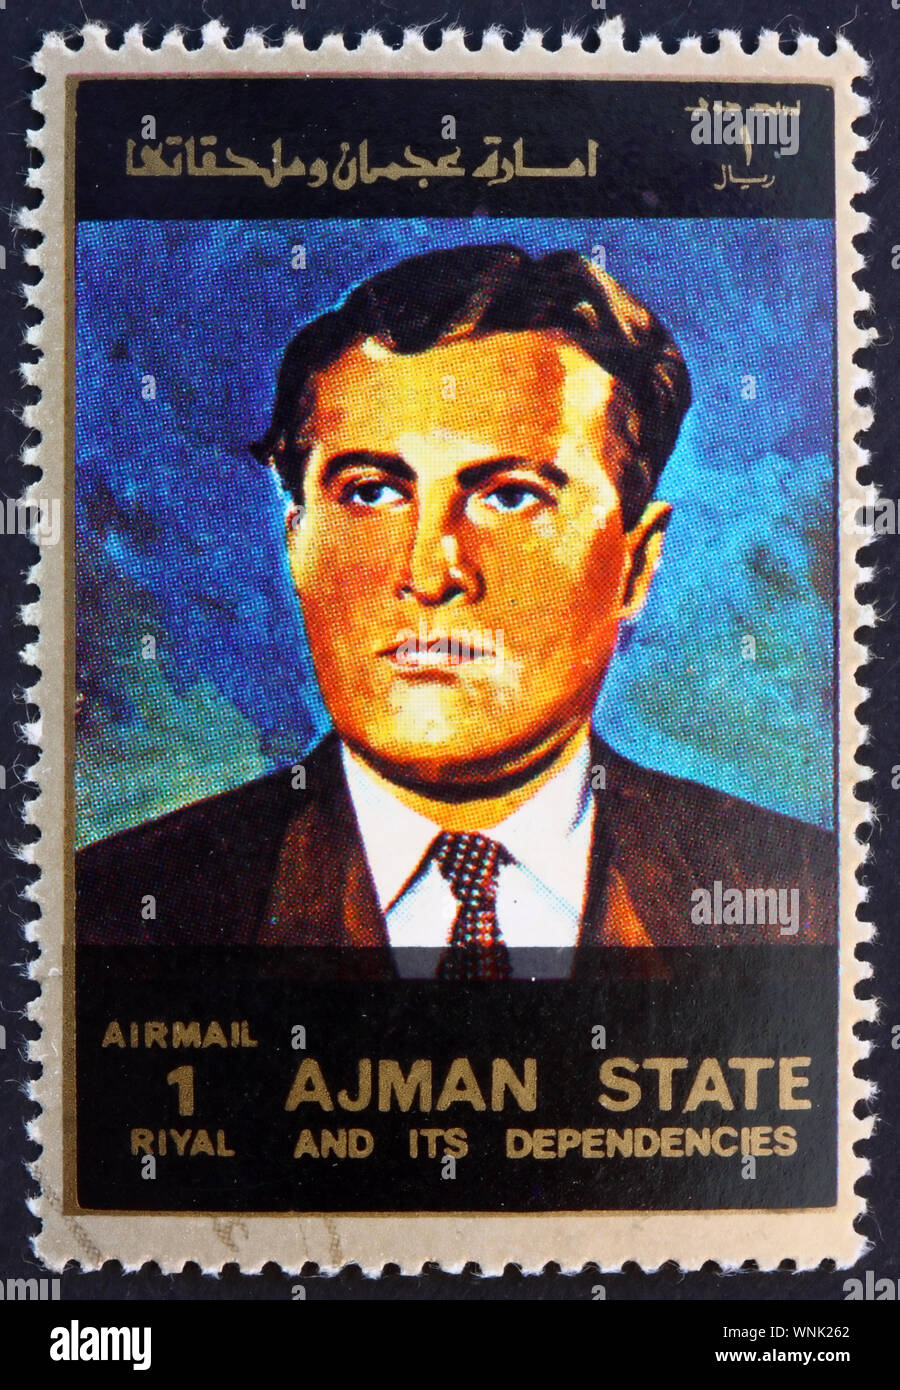 AJMAN - ca. 1973: einen Stempel in der Ajman gedruckt zeigt, Wernher von Braun, Rakete Wissenschaftler, Luft- und Raumfahrt Ingenieur und Architekt, ca. 1973 Stockfoto